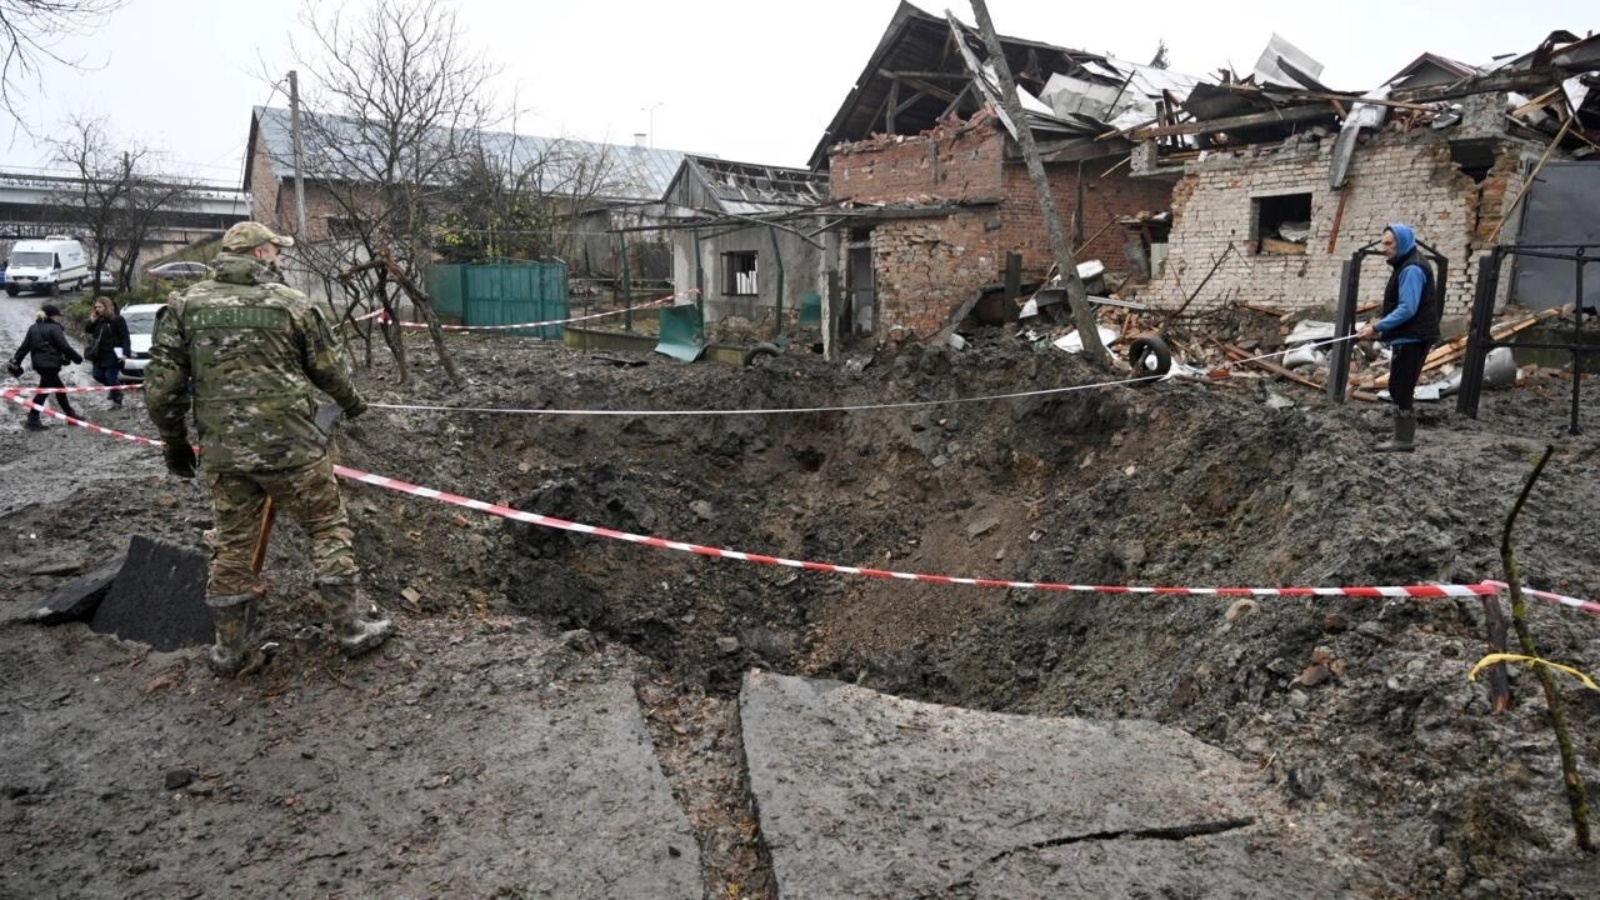 ضباط شرطة يتفحّصون حفرة نتجت عن هجوم صاروخي في لفيف في غرب أوكرانيا في 16 نوفمبر 2022